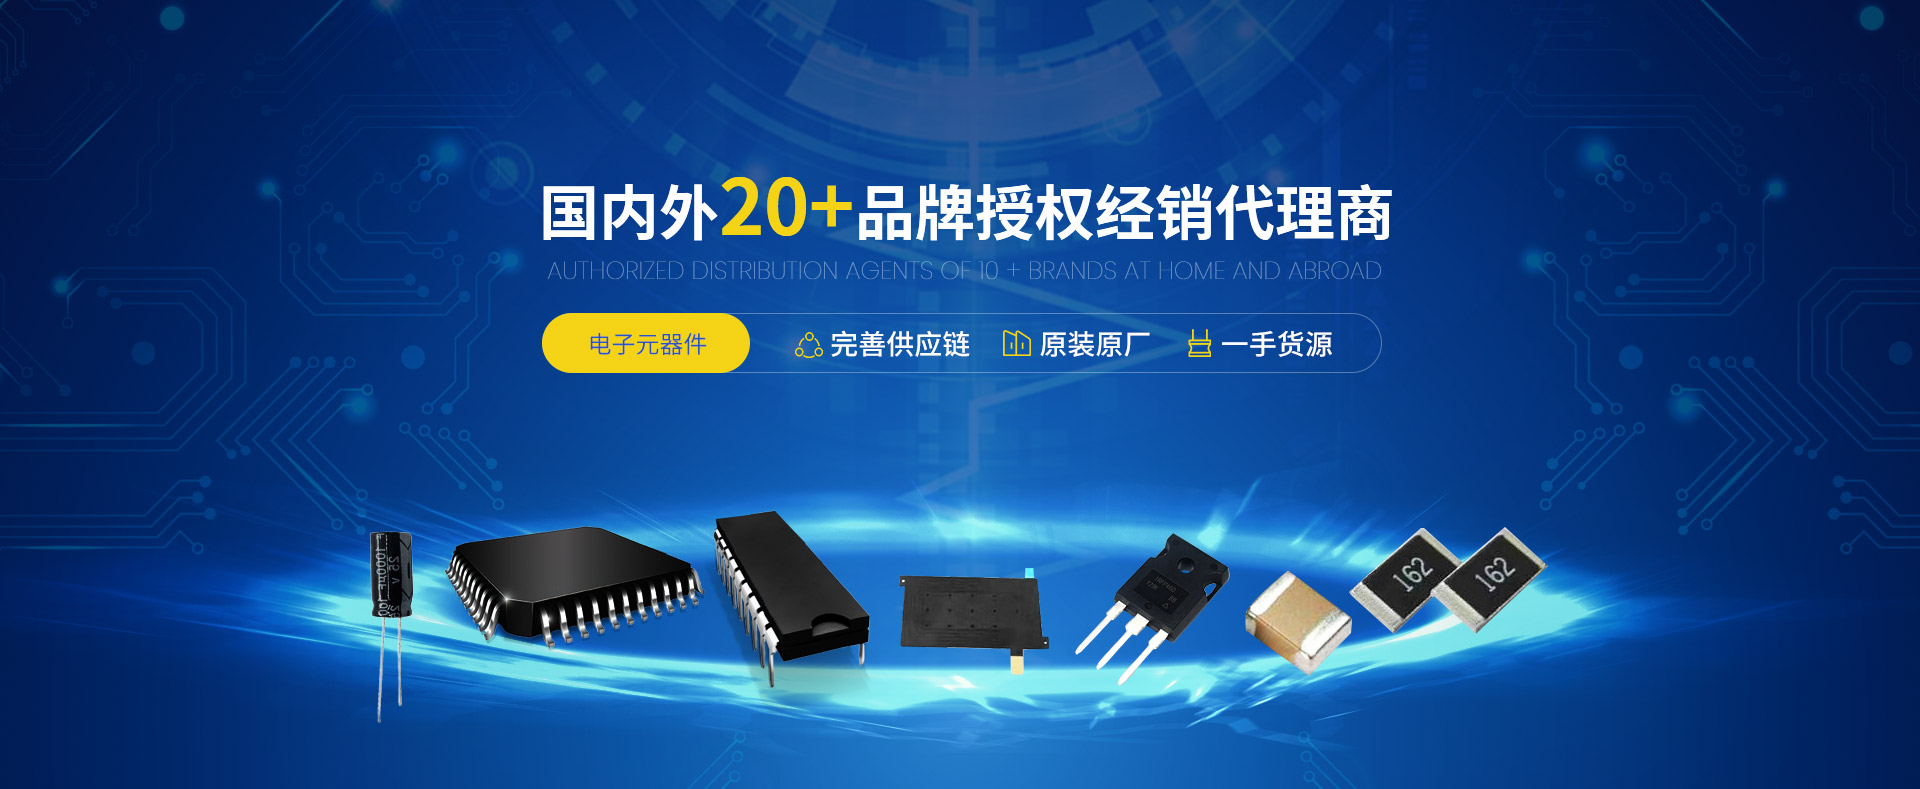 華騰電子是國內外20+電子元器件品牌授權經銷代理商